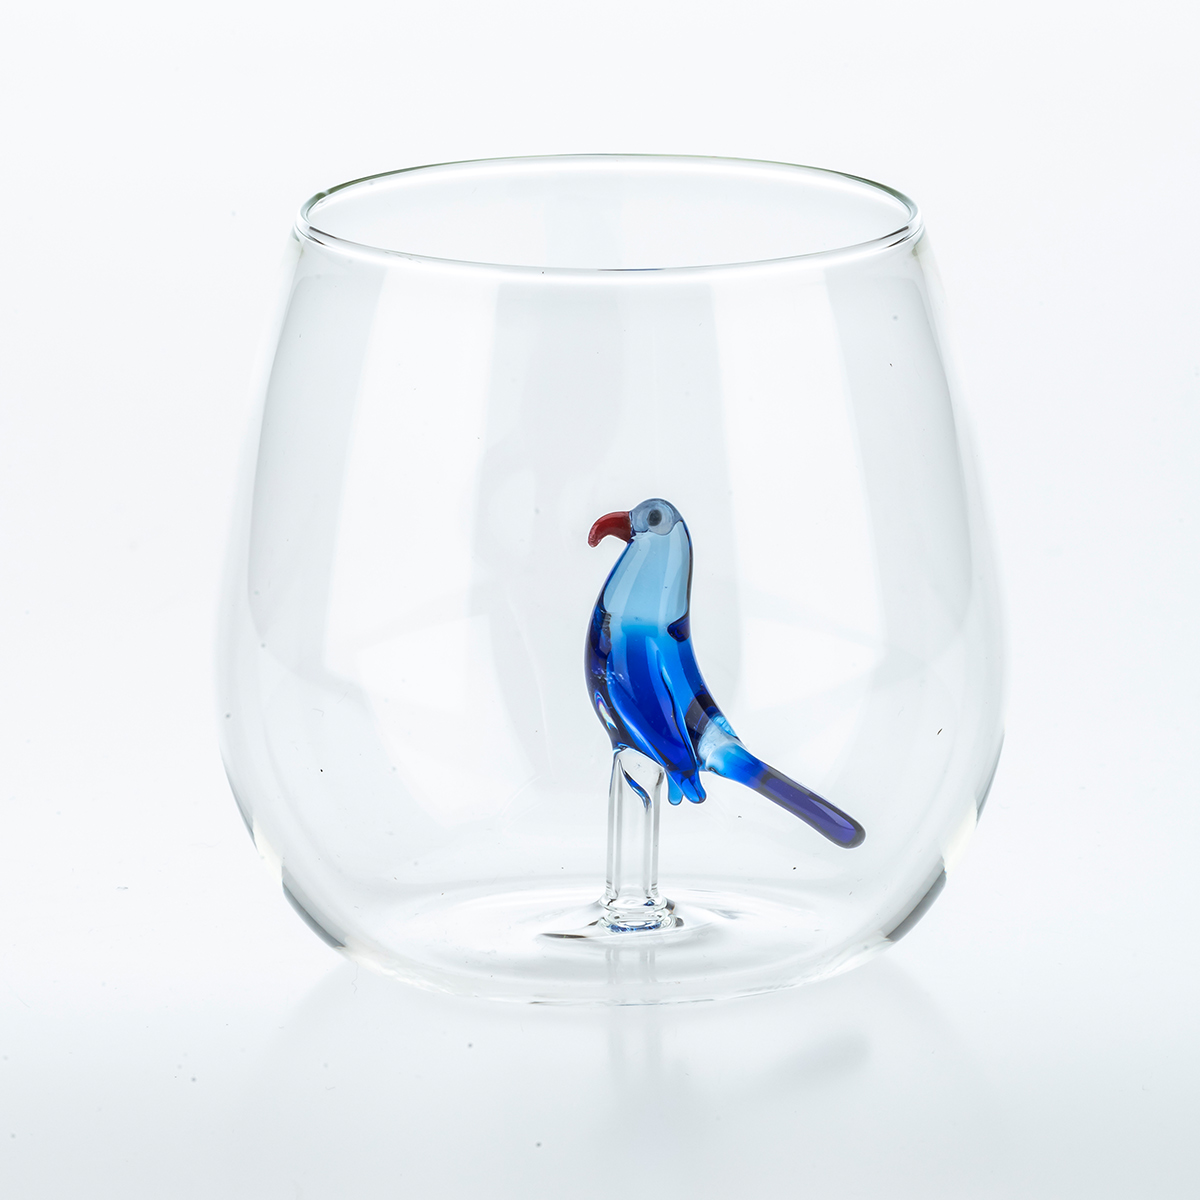 Set 6 bicchieri Tropical Birds by Casarialto